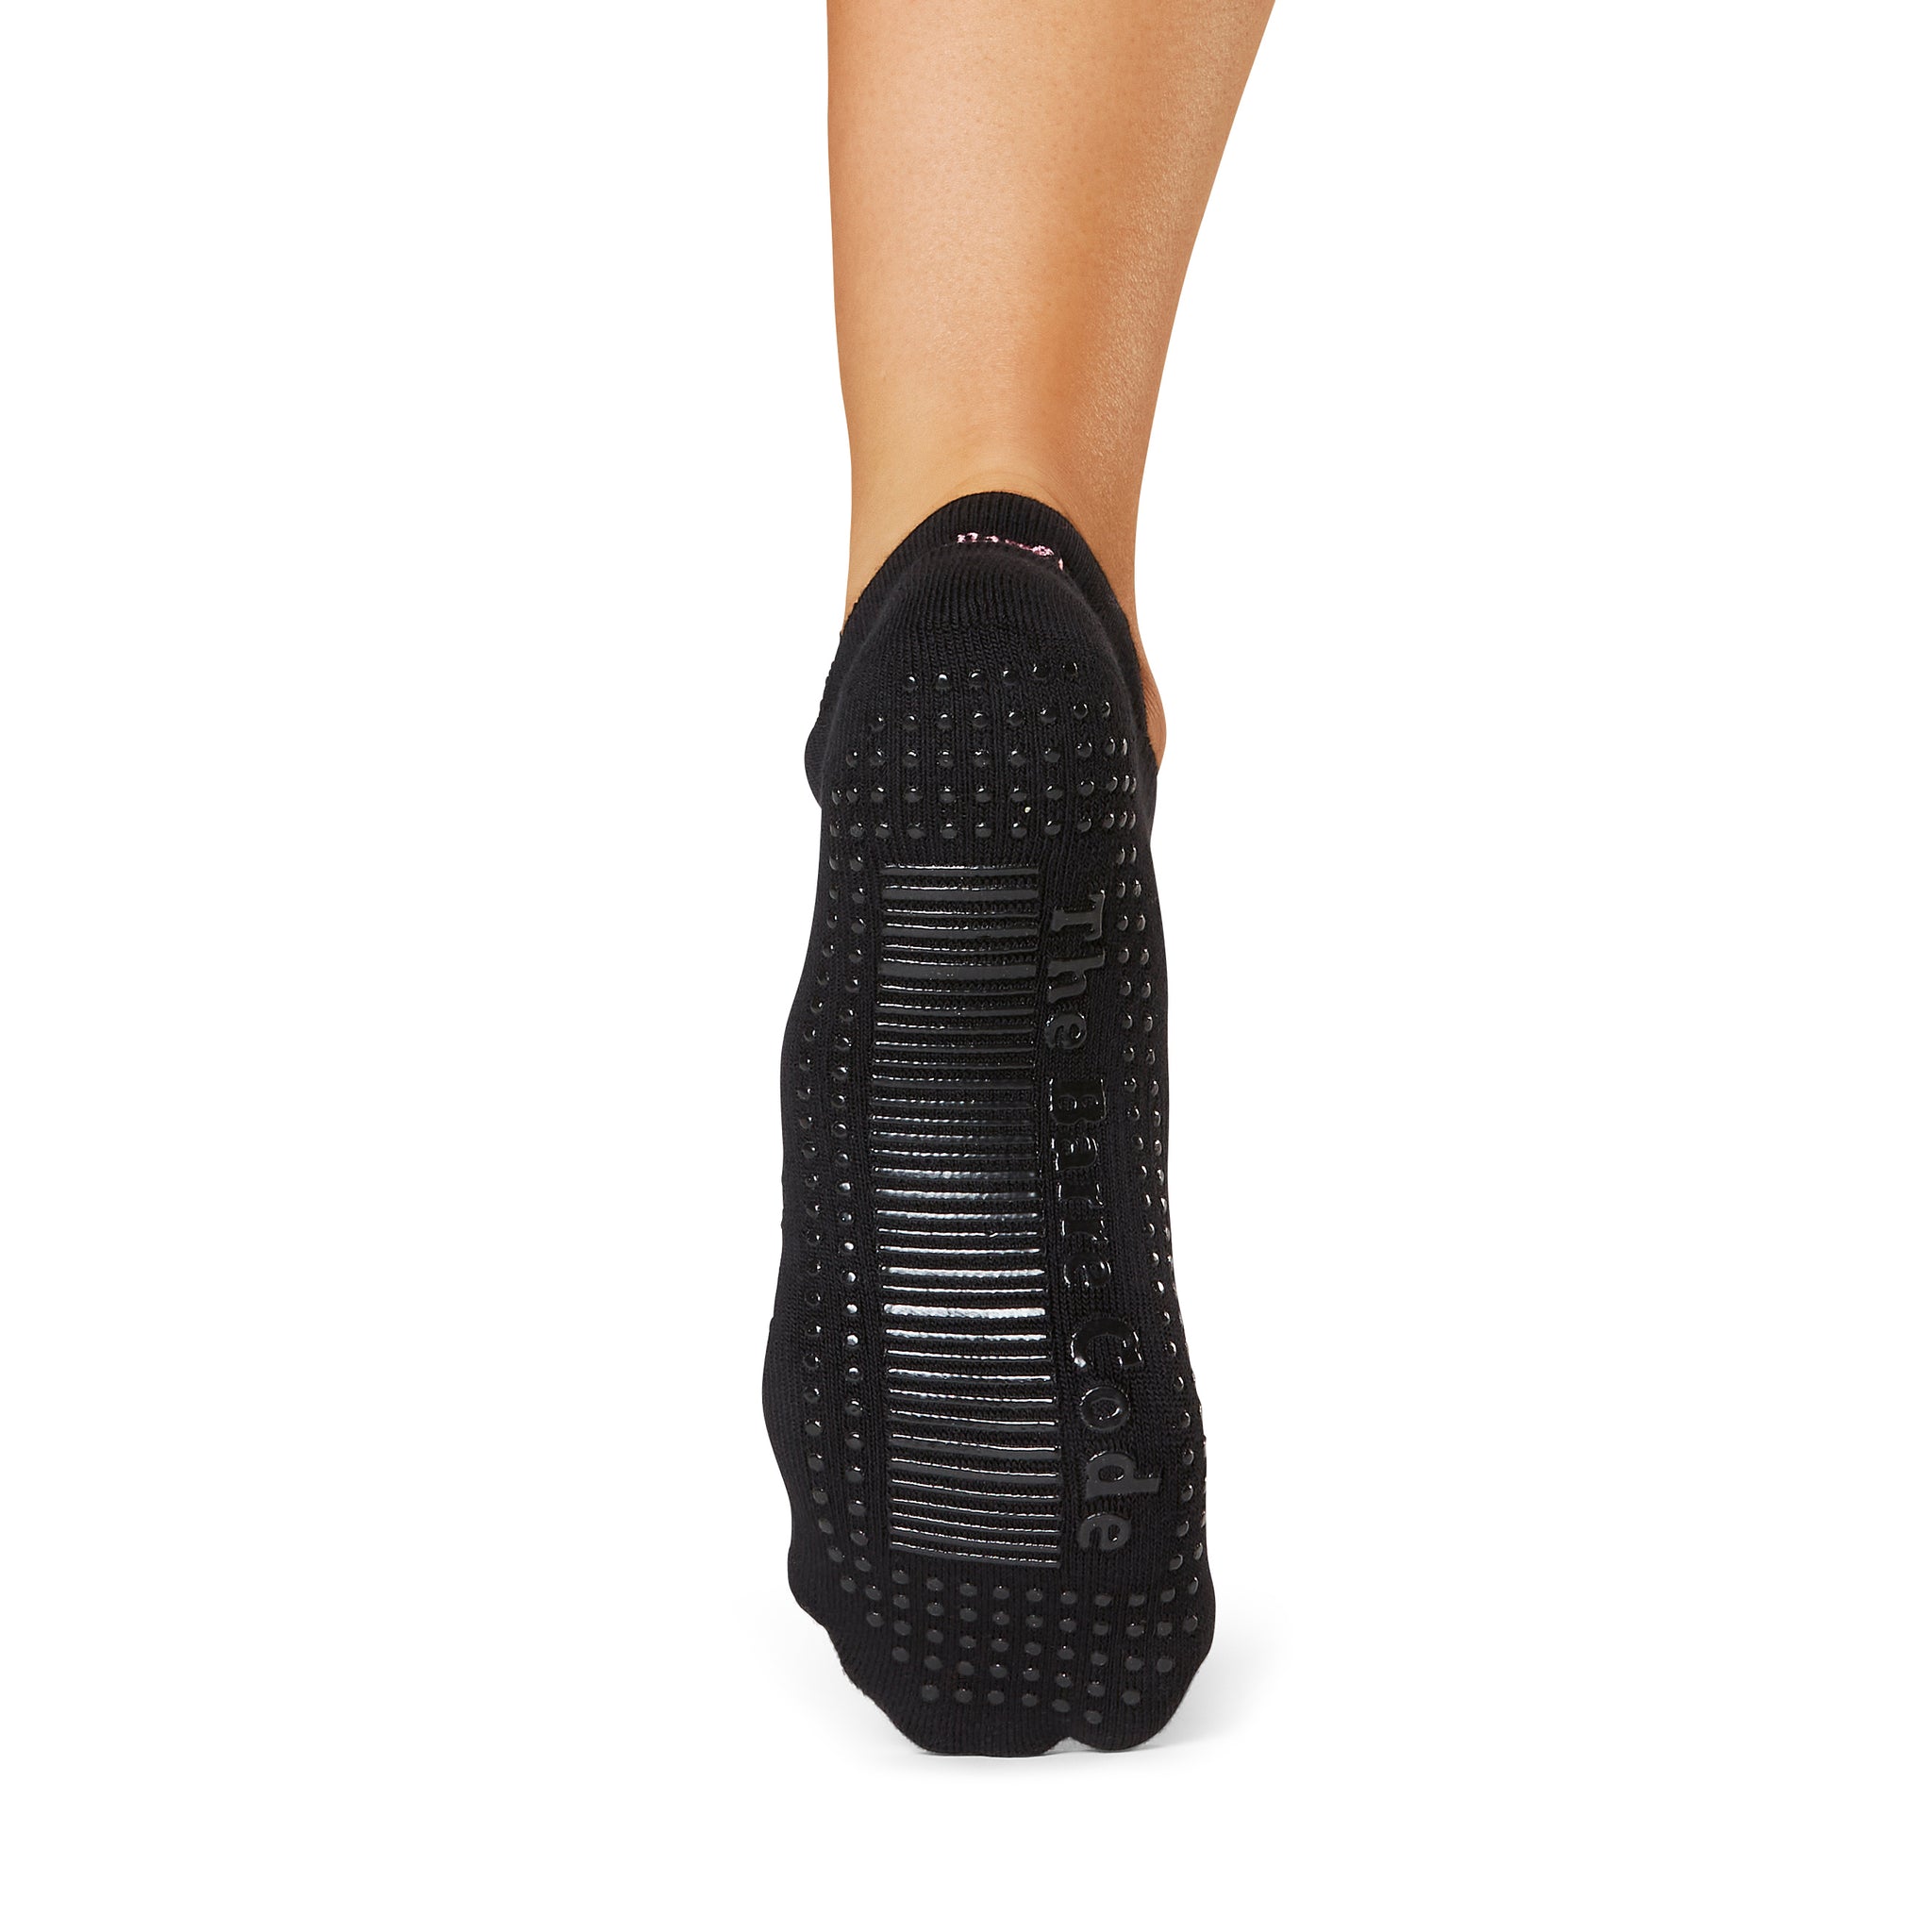 Tavi Noir Yoga Socks, Grip Socks